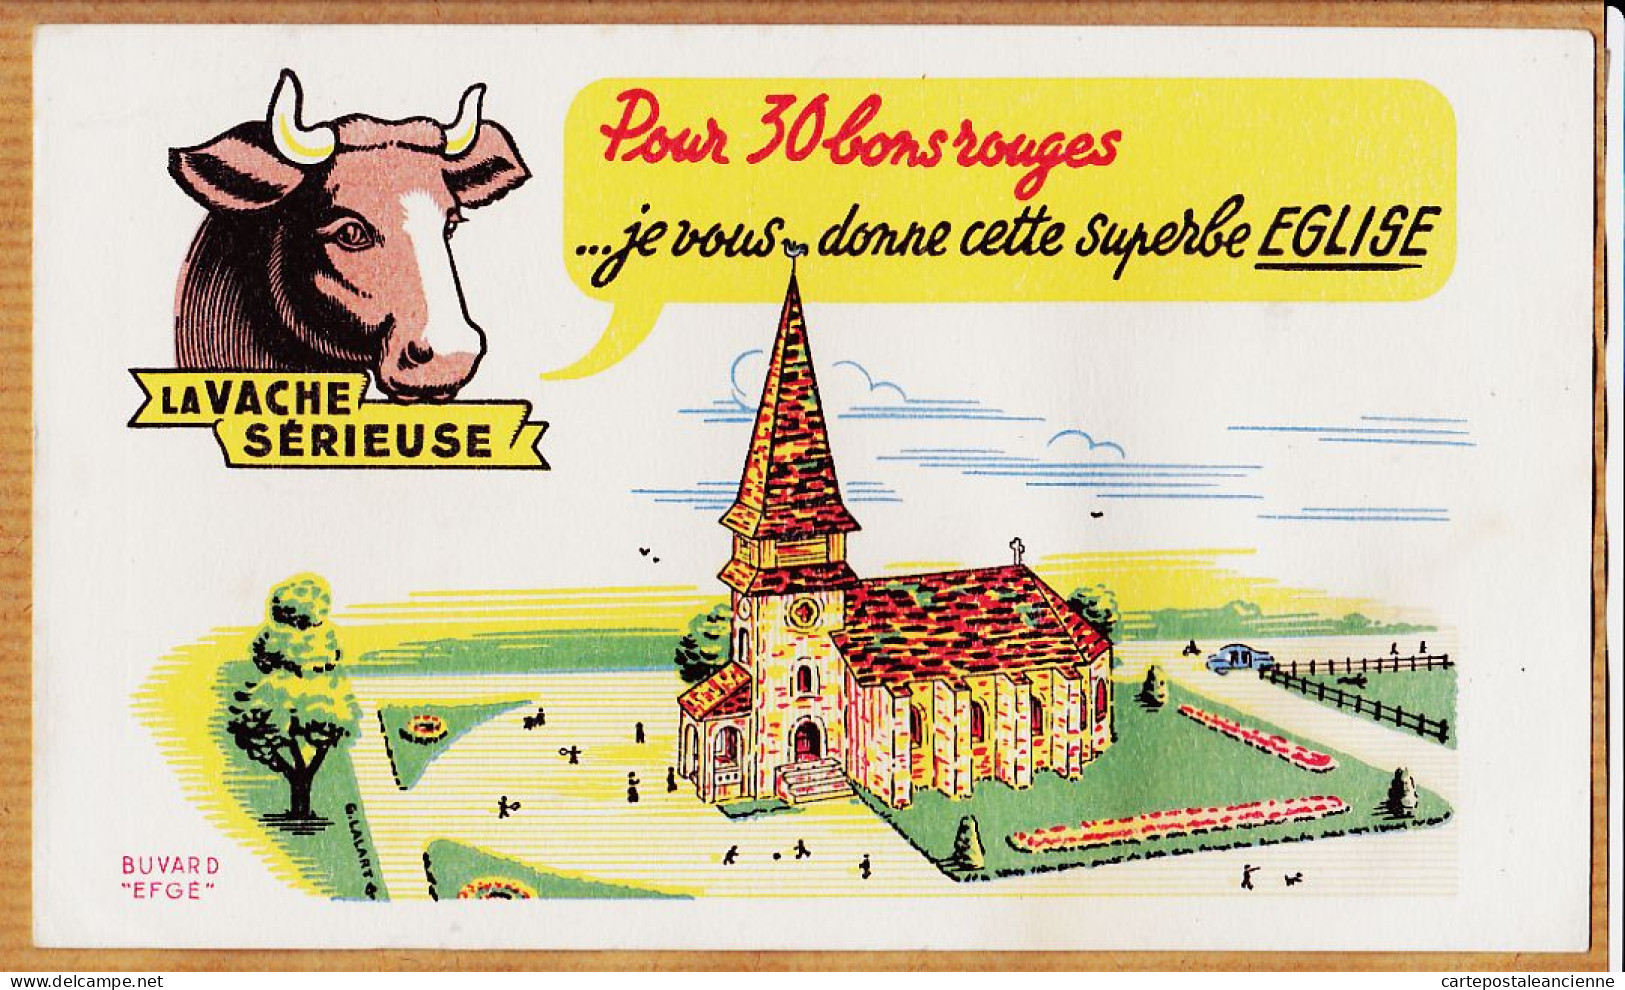 14851 / ⭐ LA VACHE SERIEUSE Crème Double Crème De Gruyère Pour 30 Bons Cette Superbe Eglise / Buvard EFGE 1950s Cppub - Levensmiddelen